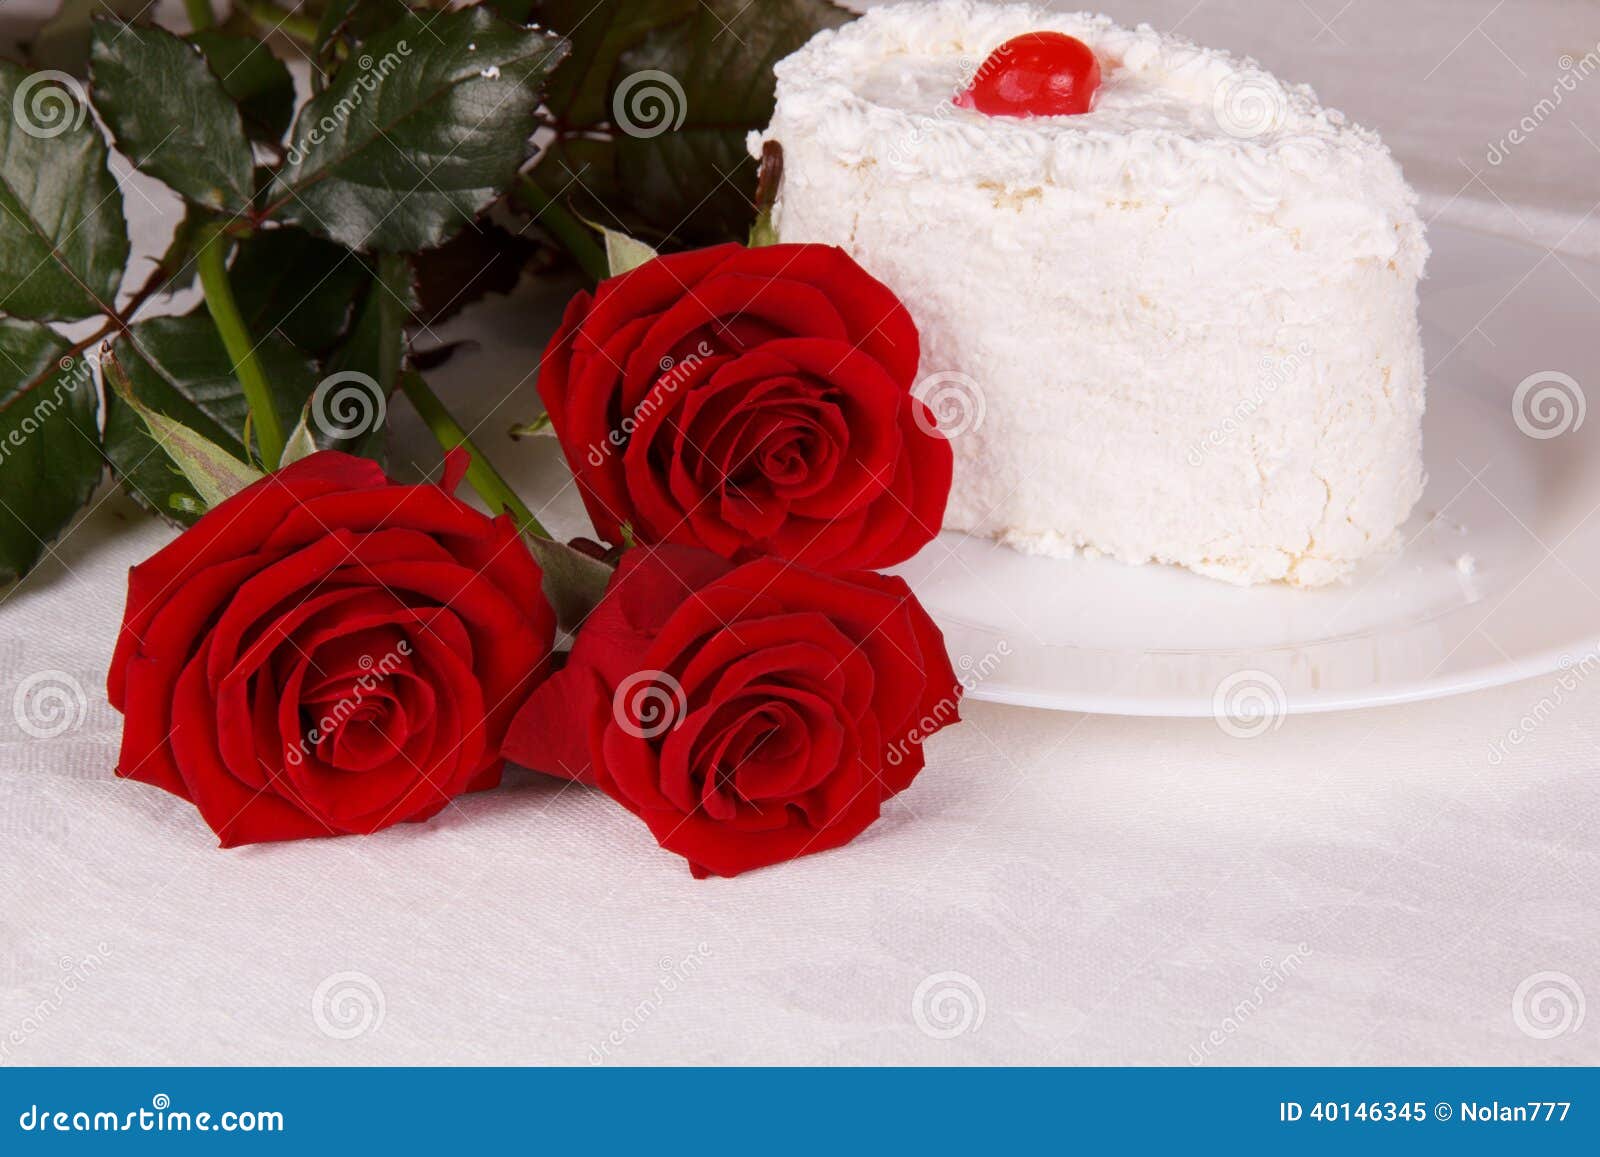 Rote Rosen Und Ein Kuchen Auf Dem Tisch Stockbild - Bild von tageslicht ...